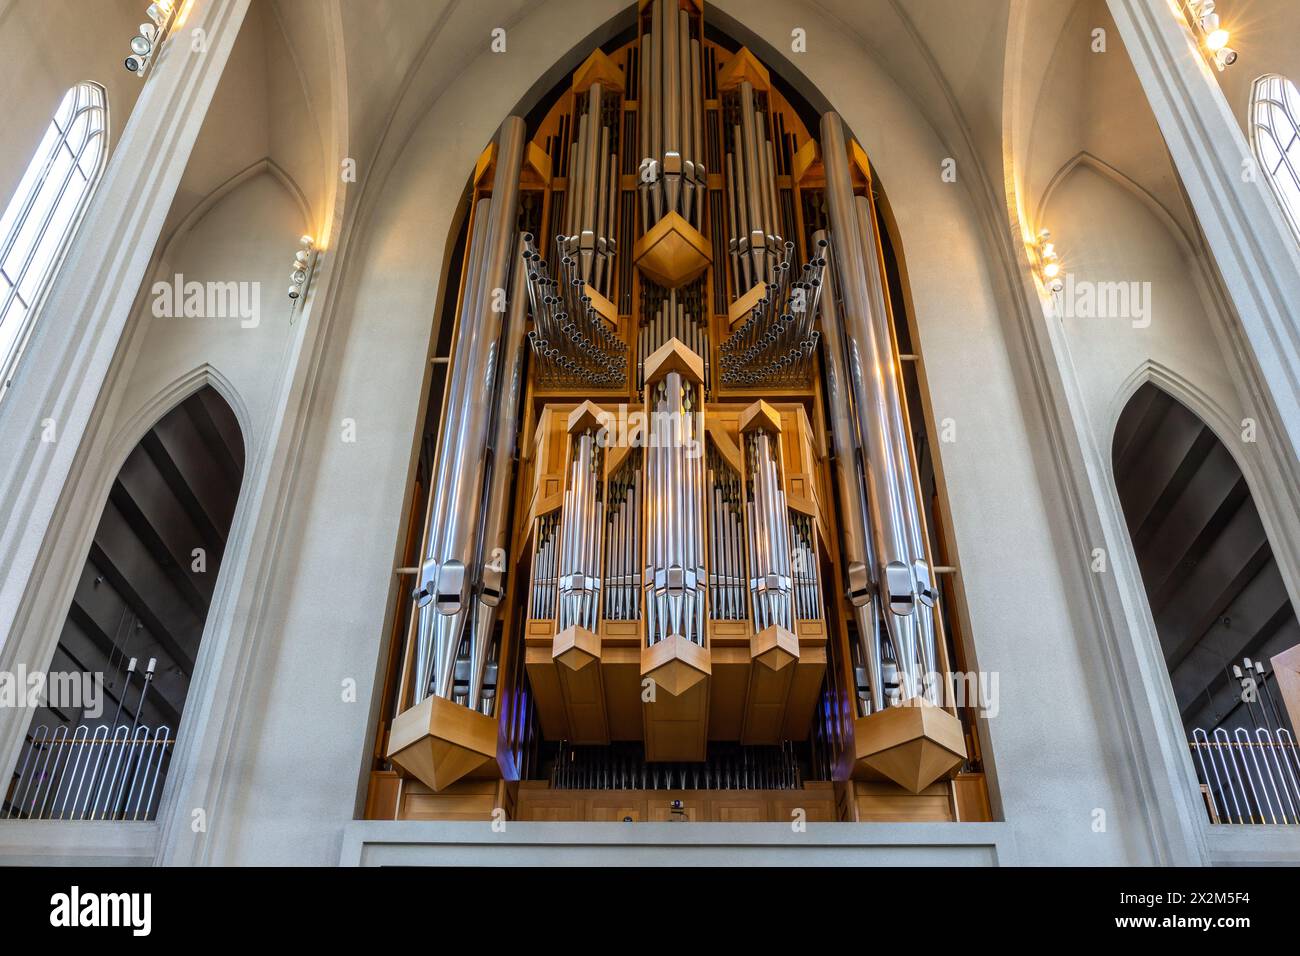 Reykjavik, Islanda, 14.05.22. Grandi organi a canne nella chiesa di Hallgrimskirkja del costruttore di organi tedesco Johannes Klais di Bonn. Foto Stock